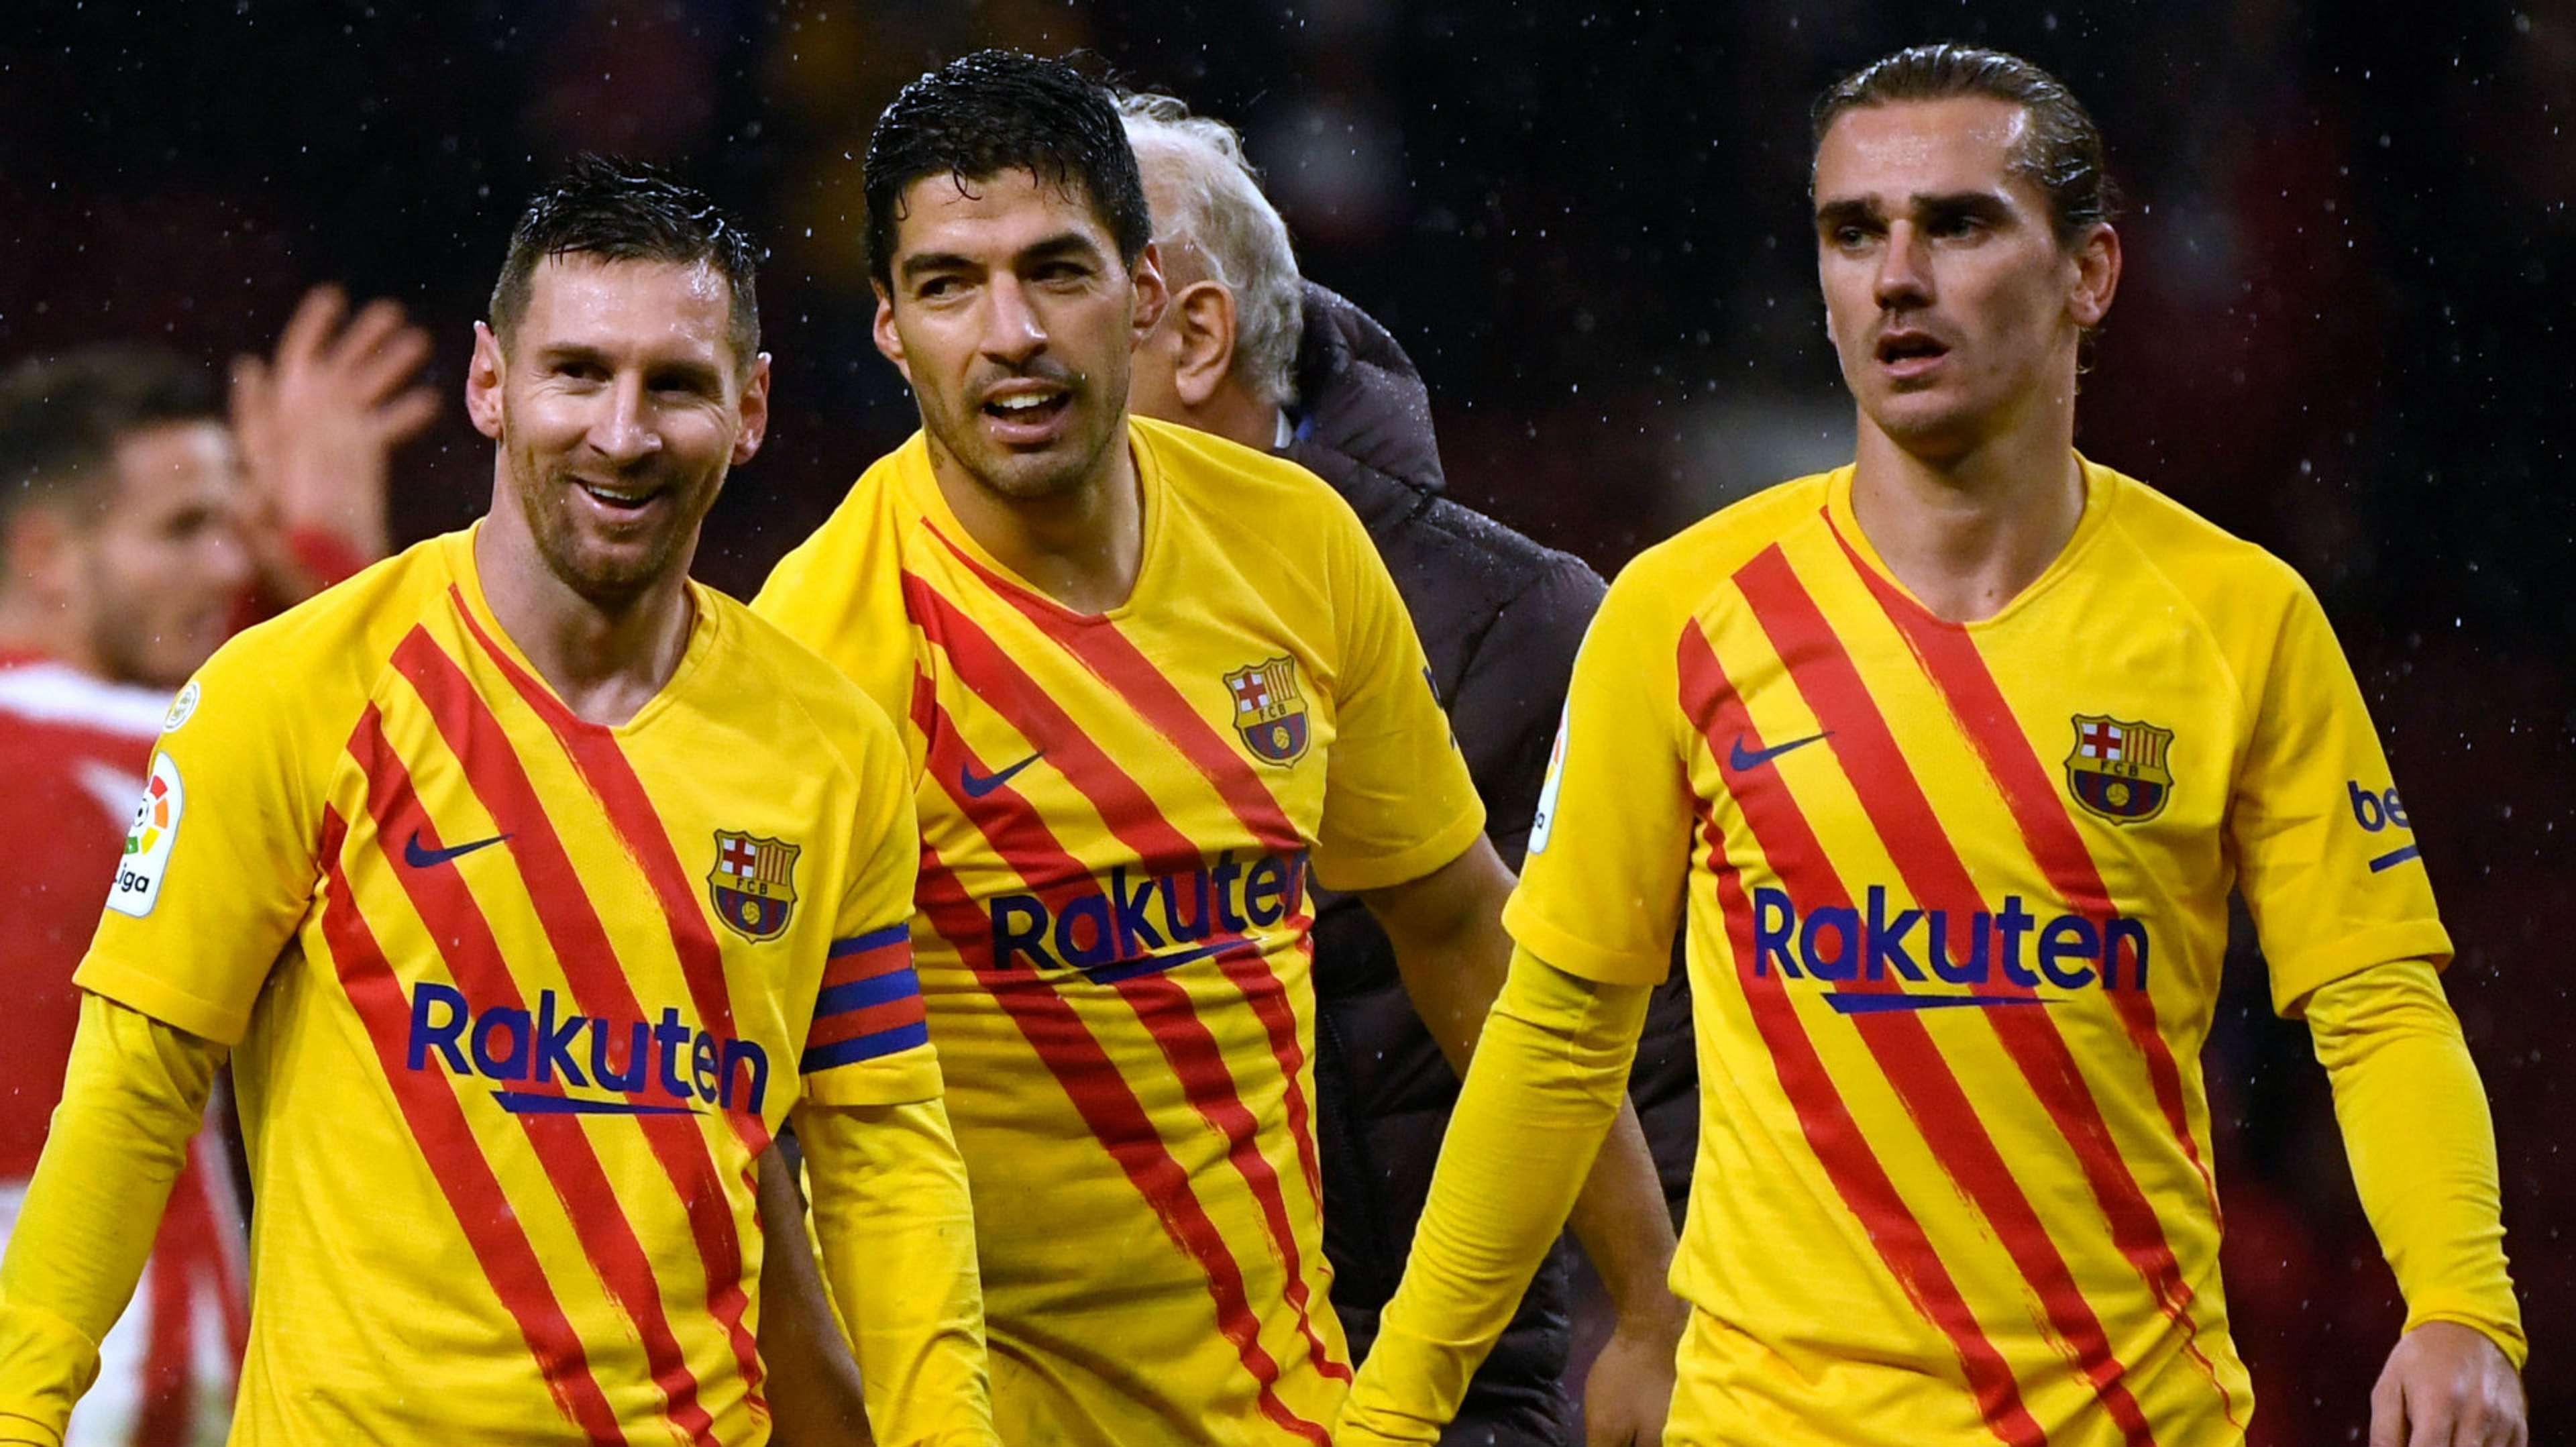 Lionel Messi Luis Suarez Antoine Griezmann Atletico Madrid vs Barcelona 2019-20